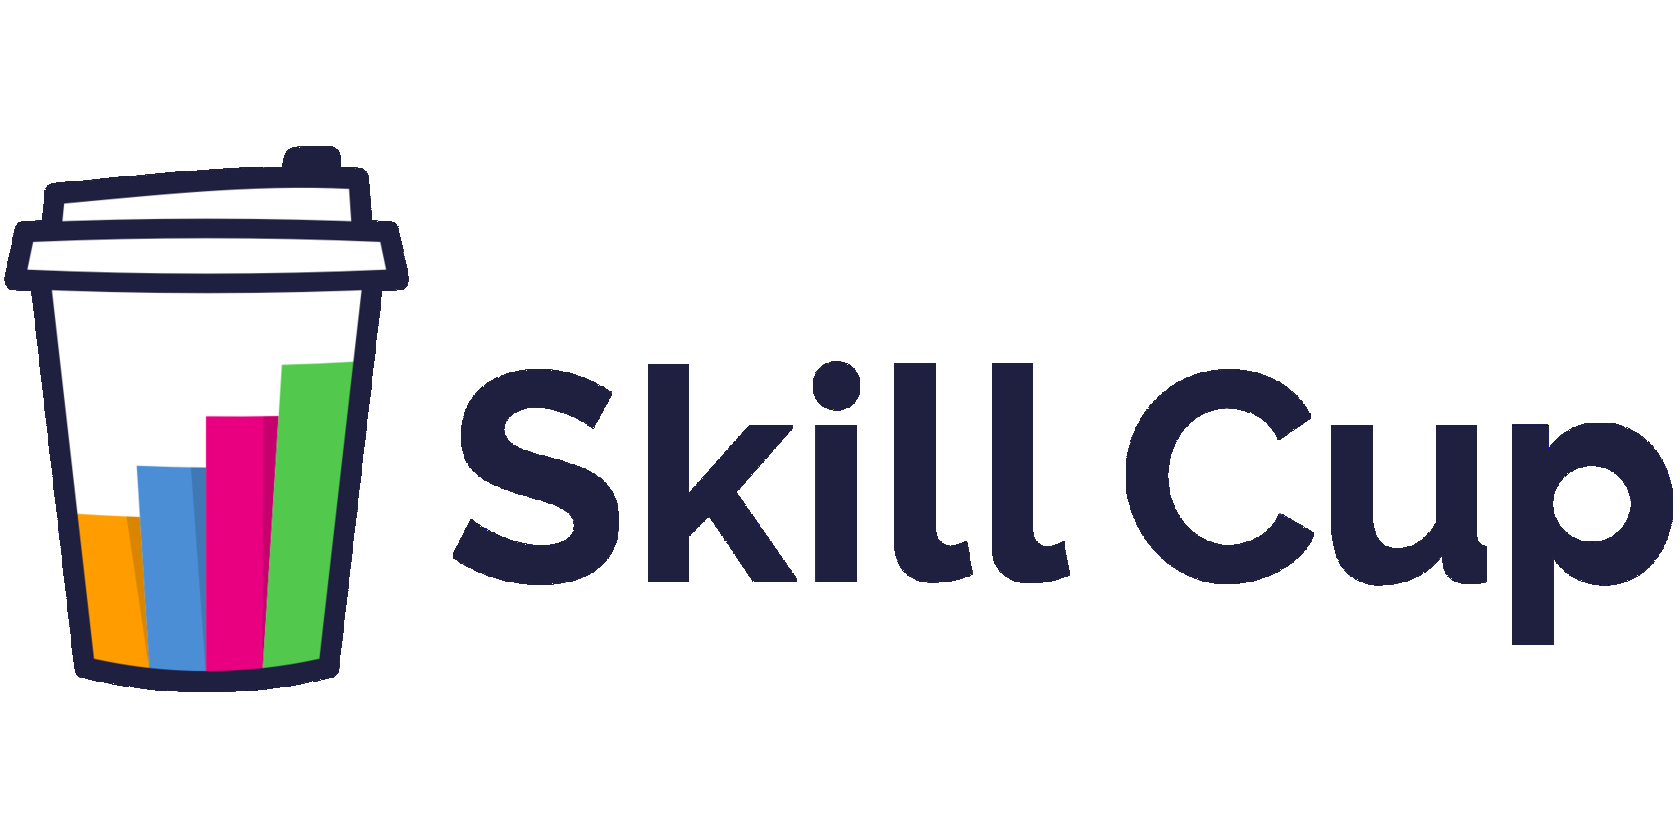 Платформа СКИЛЛ кап. Логотип СКИЛЛ кап. Приложение СКИЛЛ кап. Картинки для skill Cup. Скило